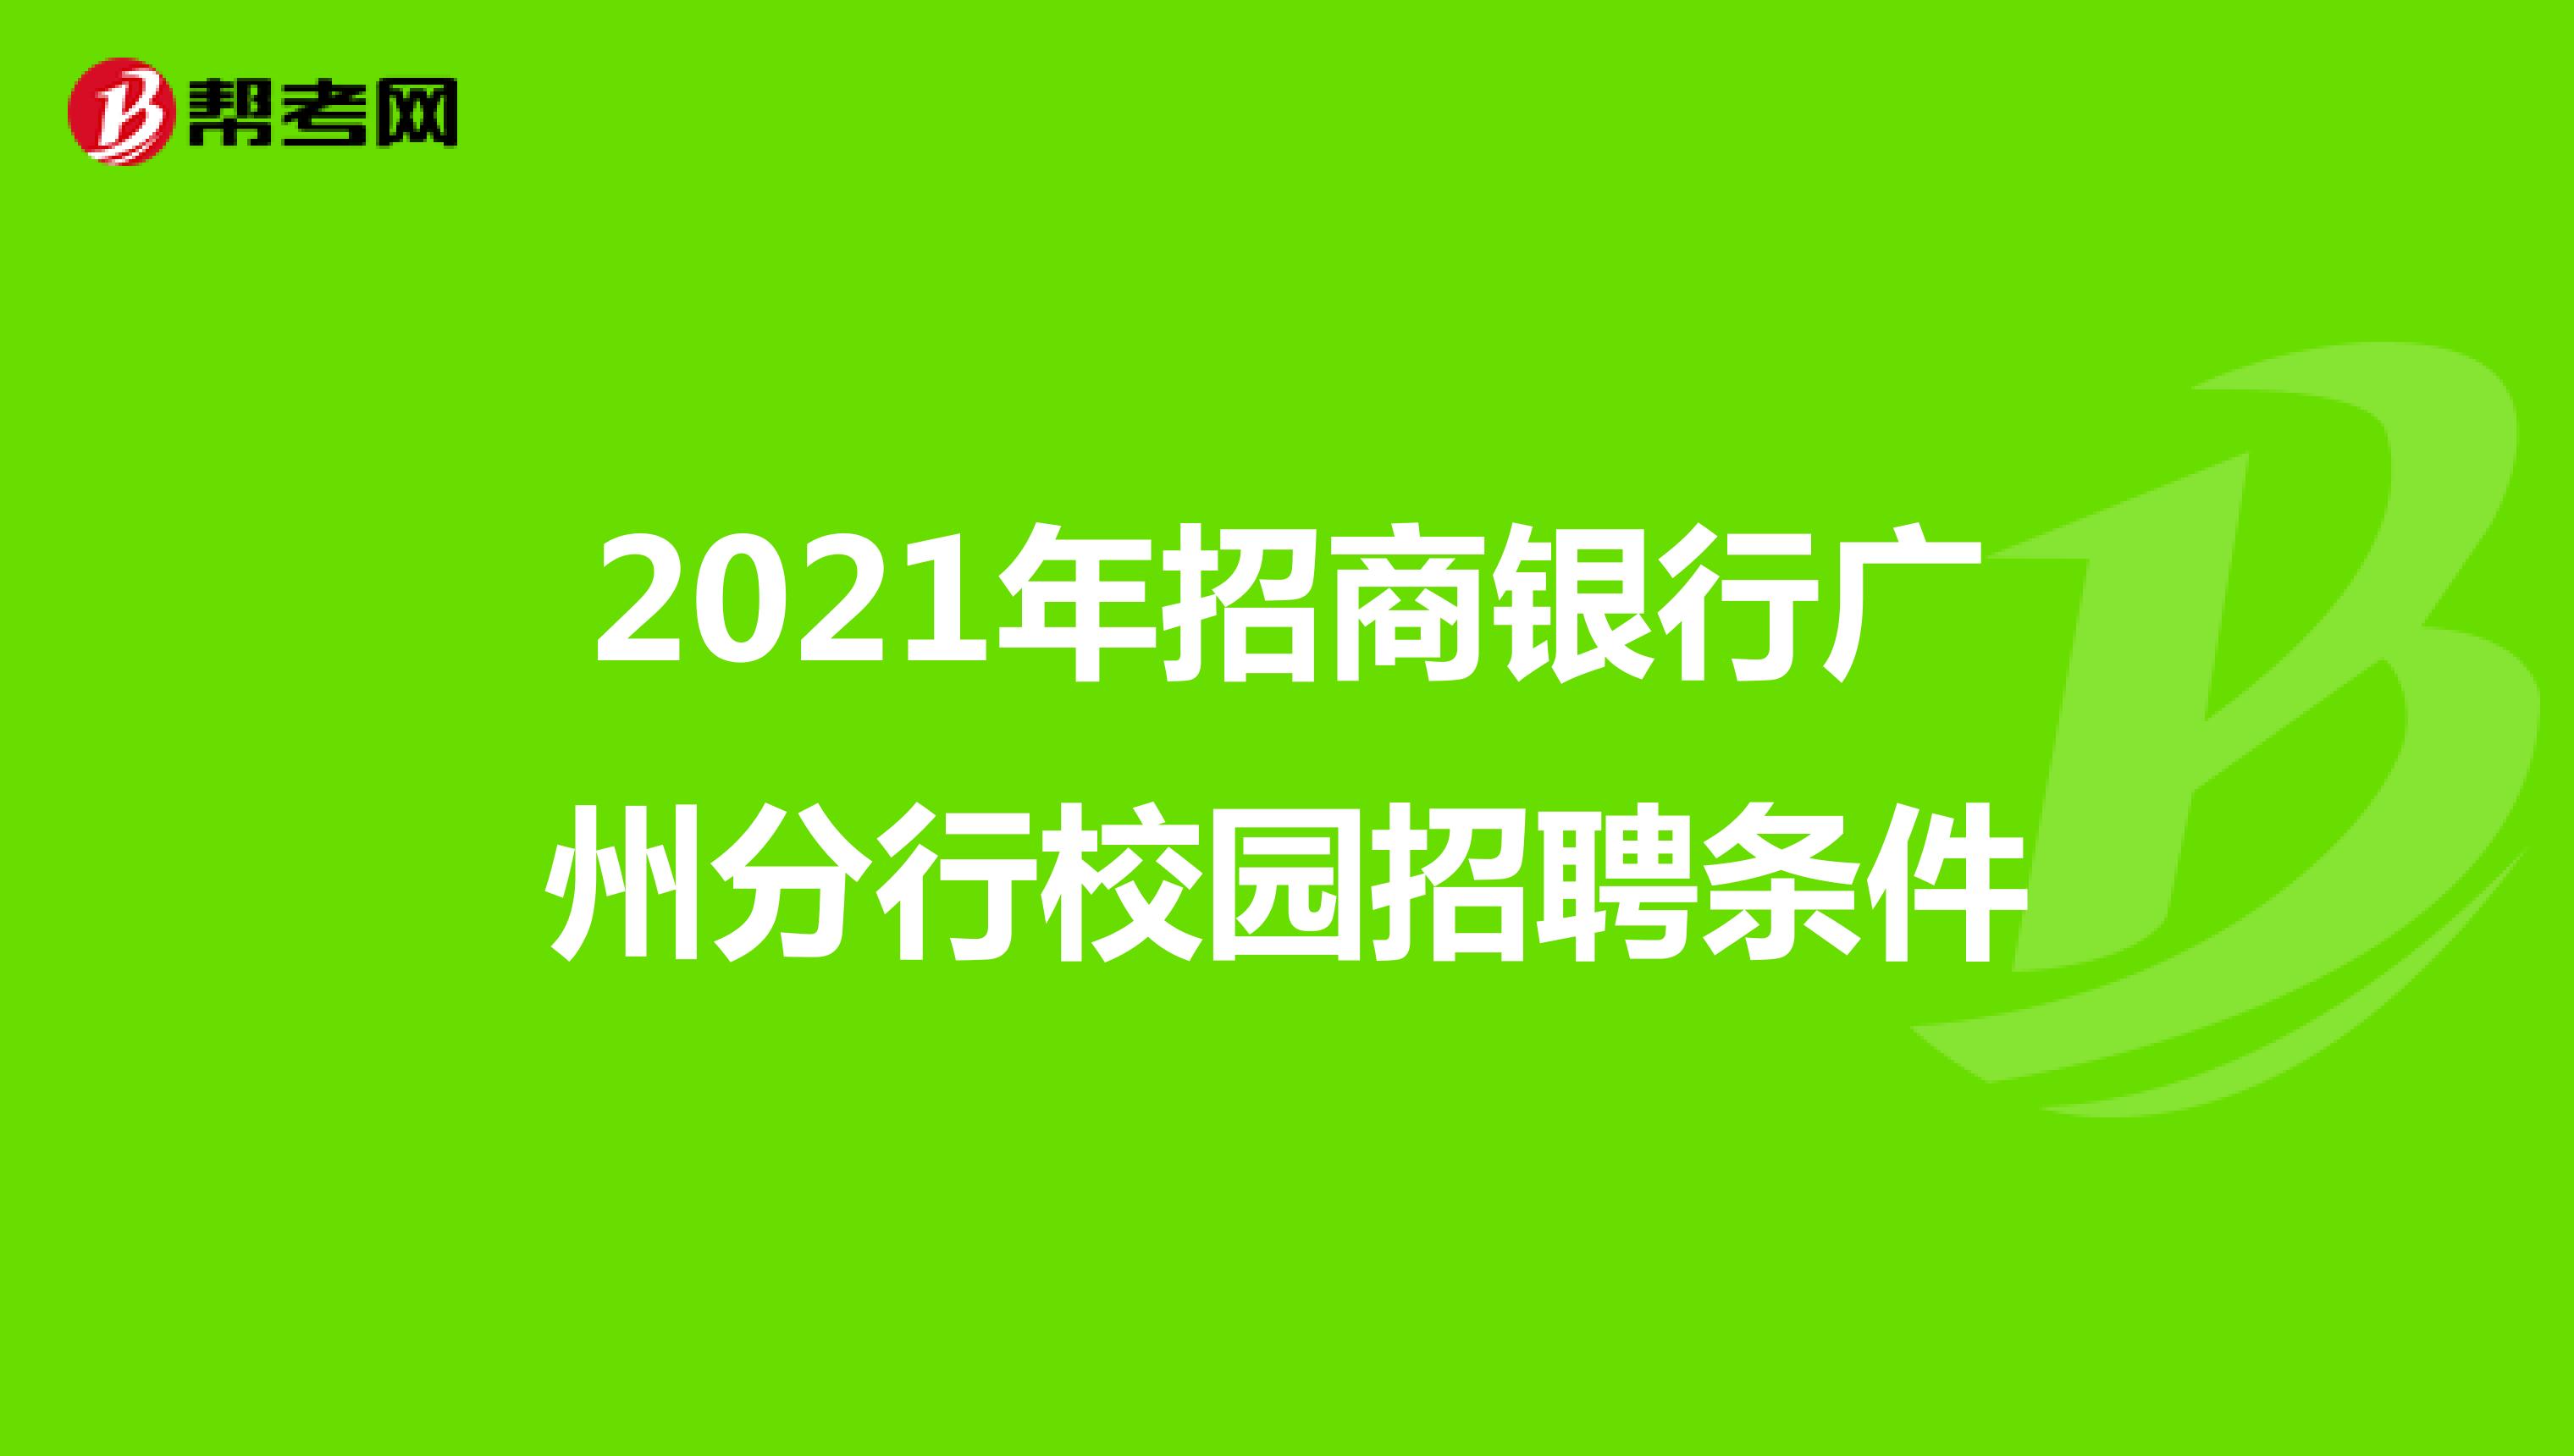 2021年招商银行广州分行校园招聘条件